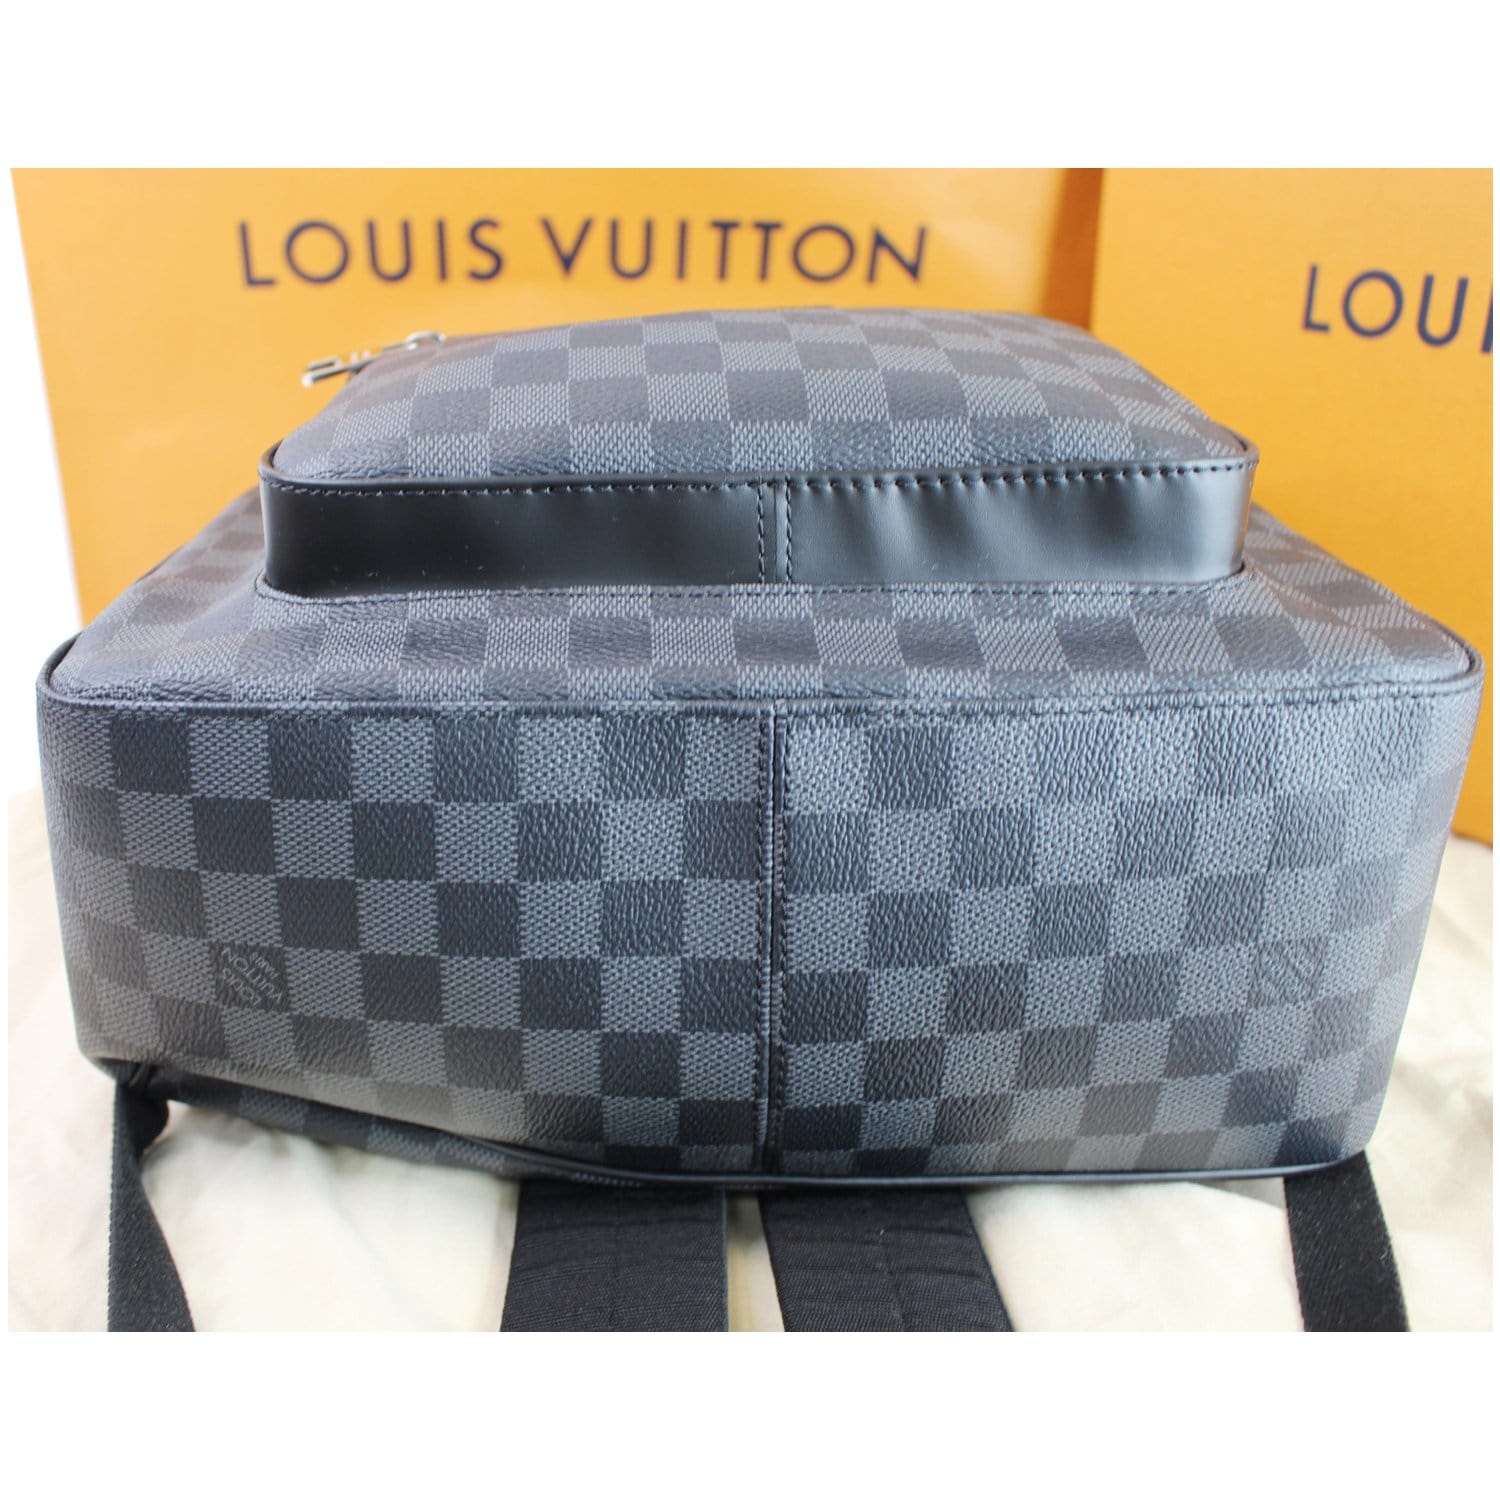 Louis Vuitton - Josh Damier Graphite Canvas Backpack